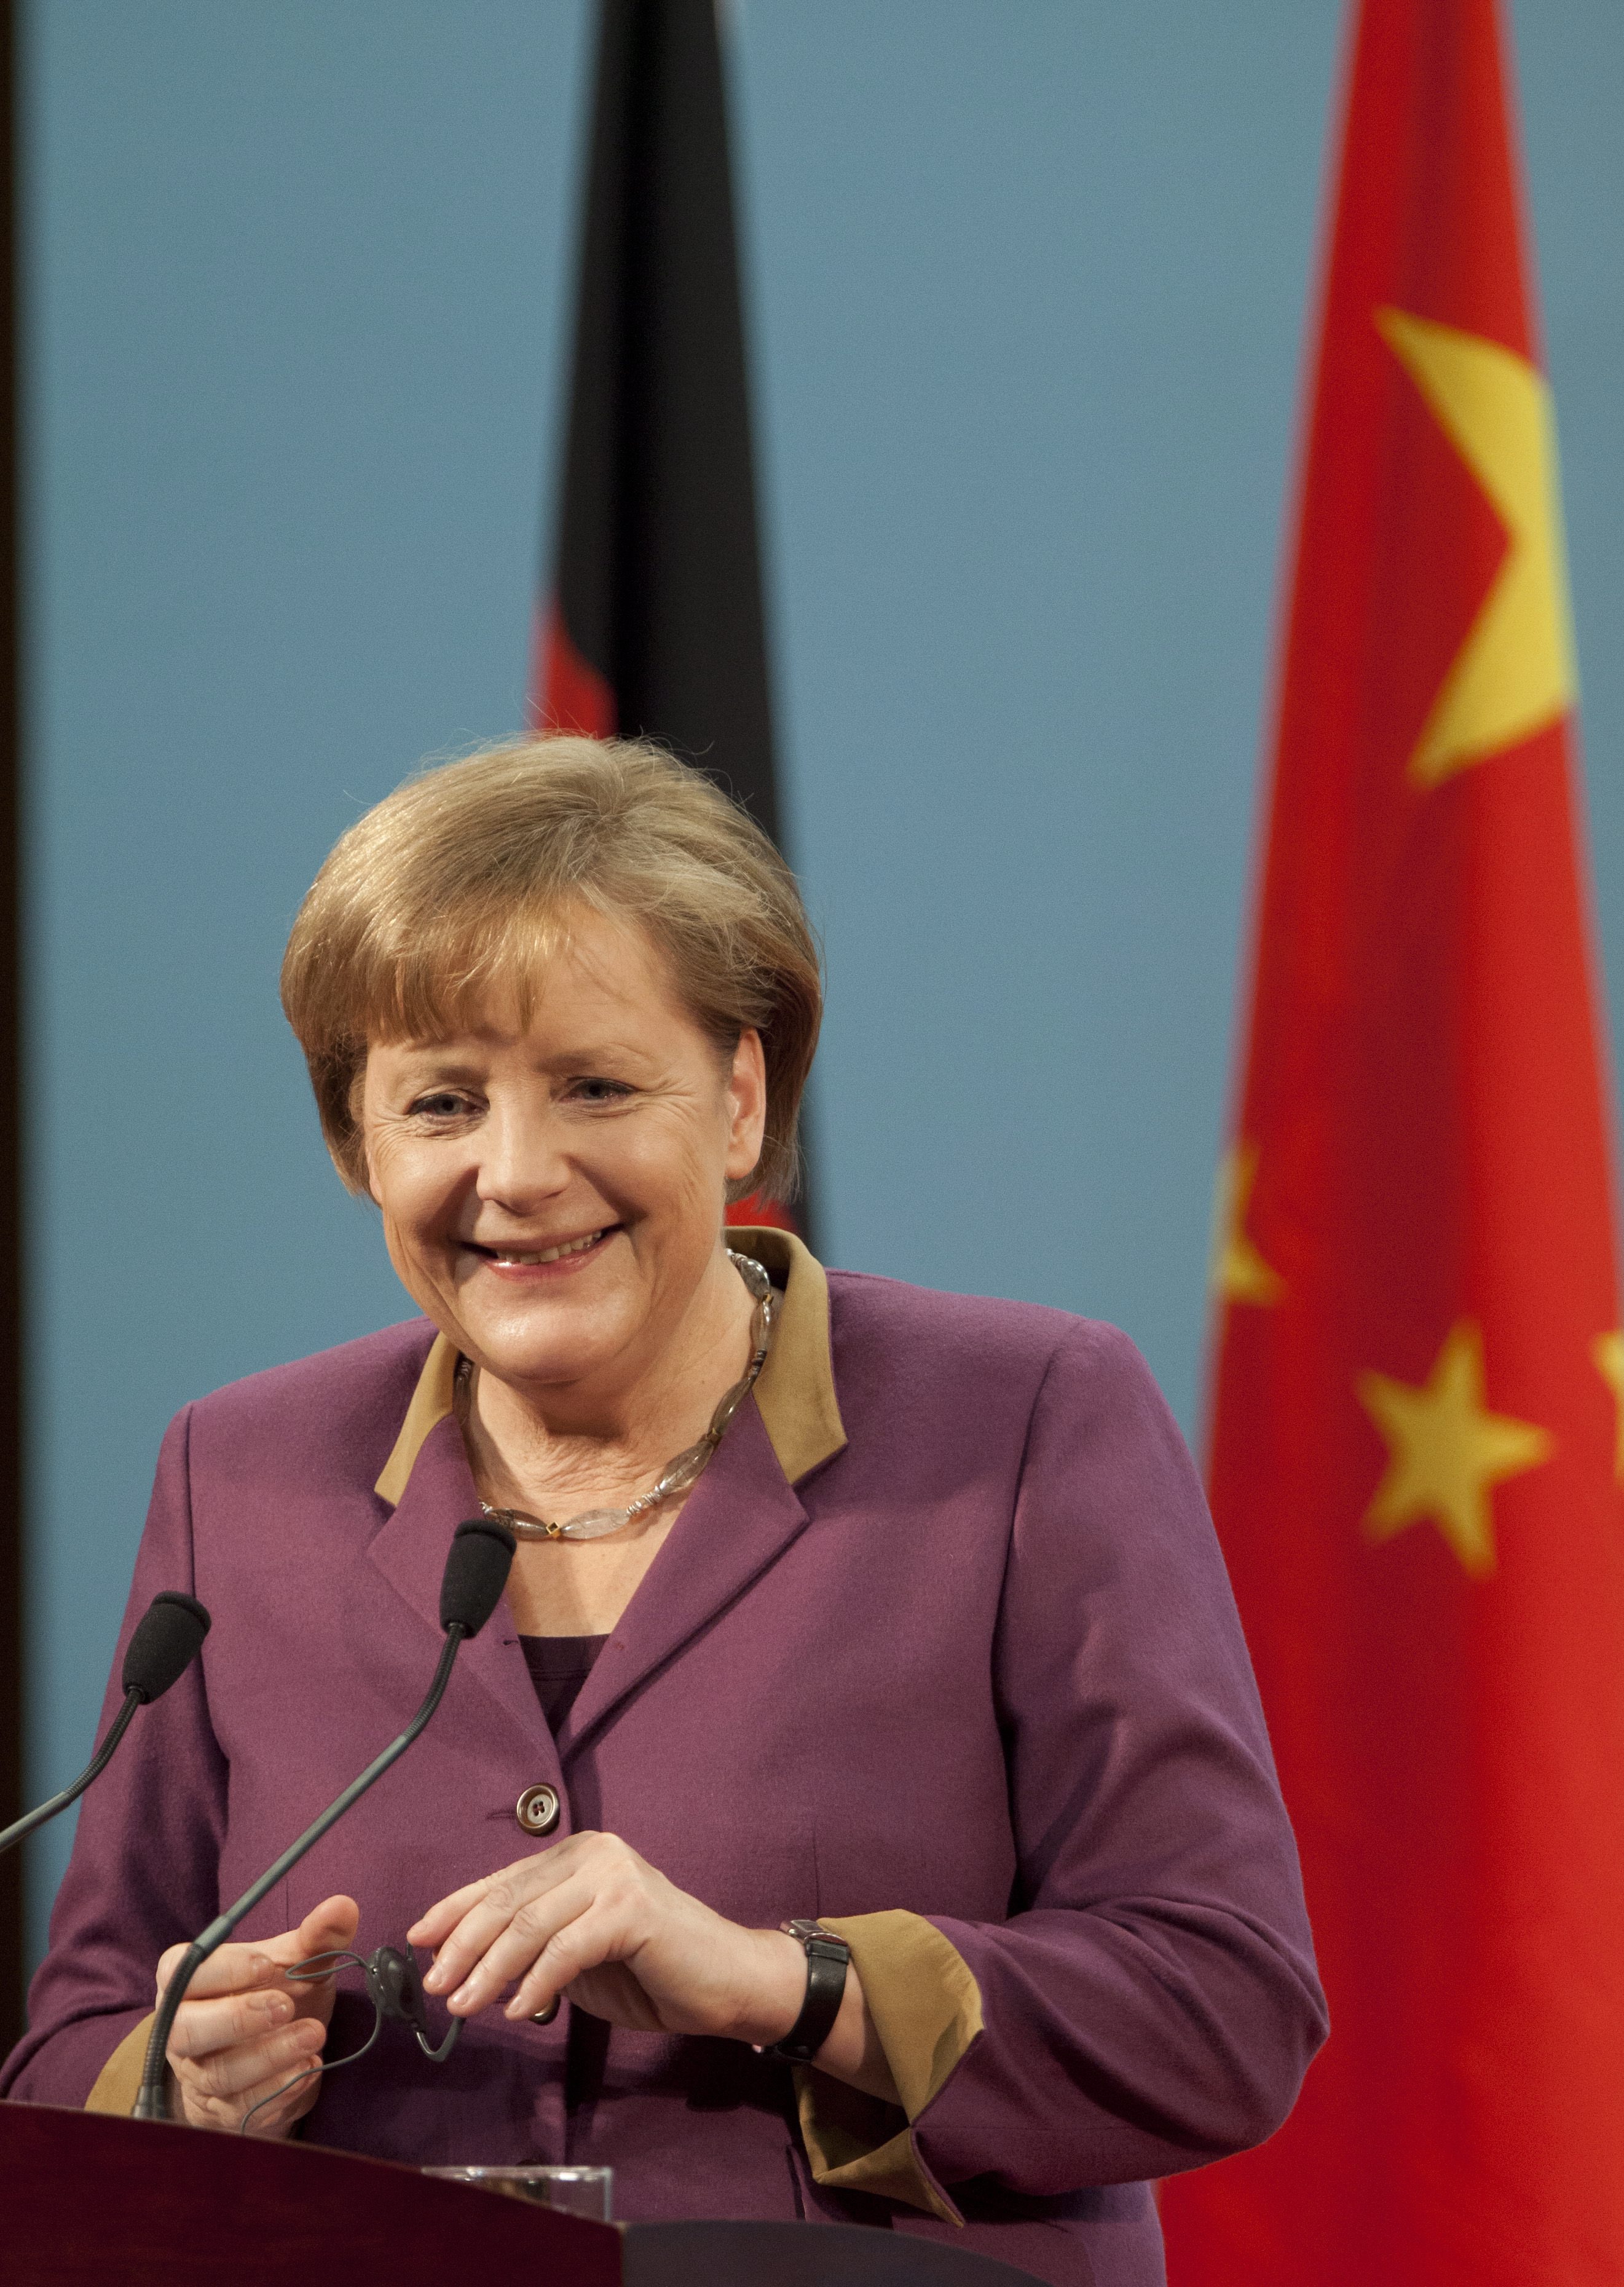 В реч пред парламента Меркел отхвърли призивите да бъдат изоставени или намалени мерките за икономии в някои страниси в Китайска